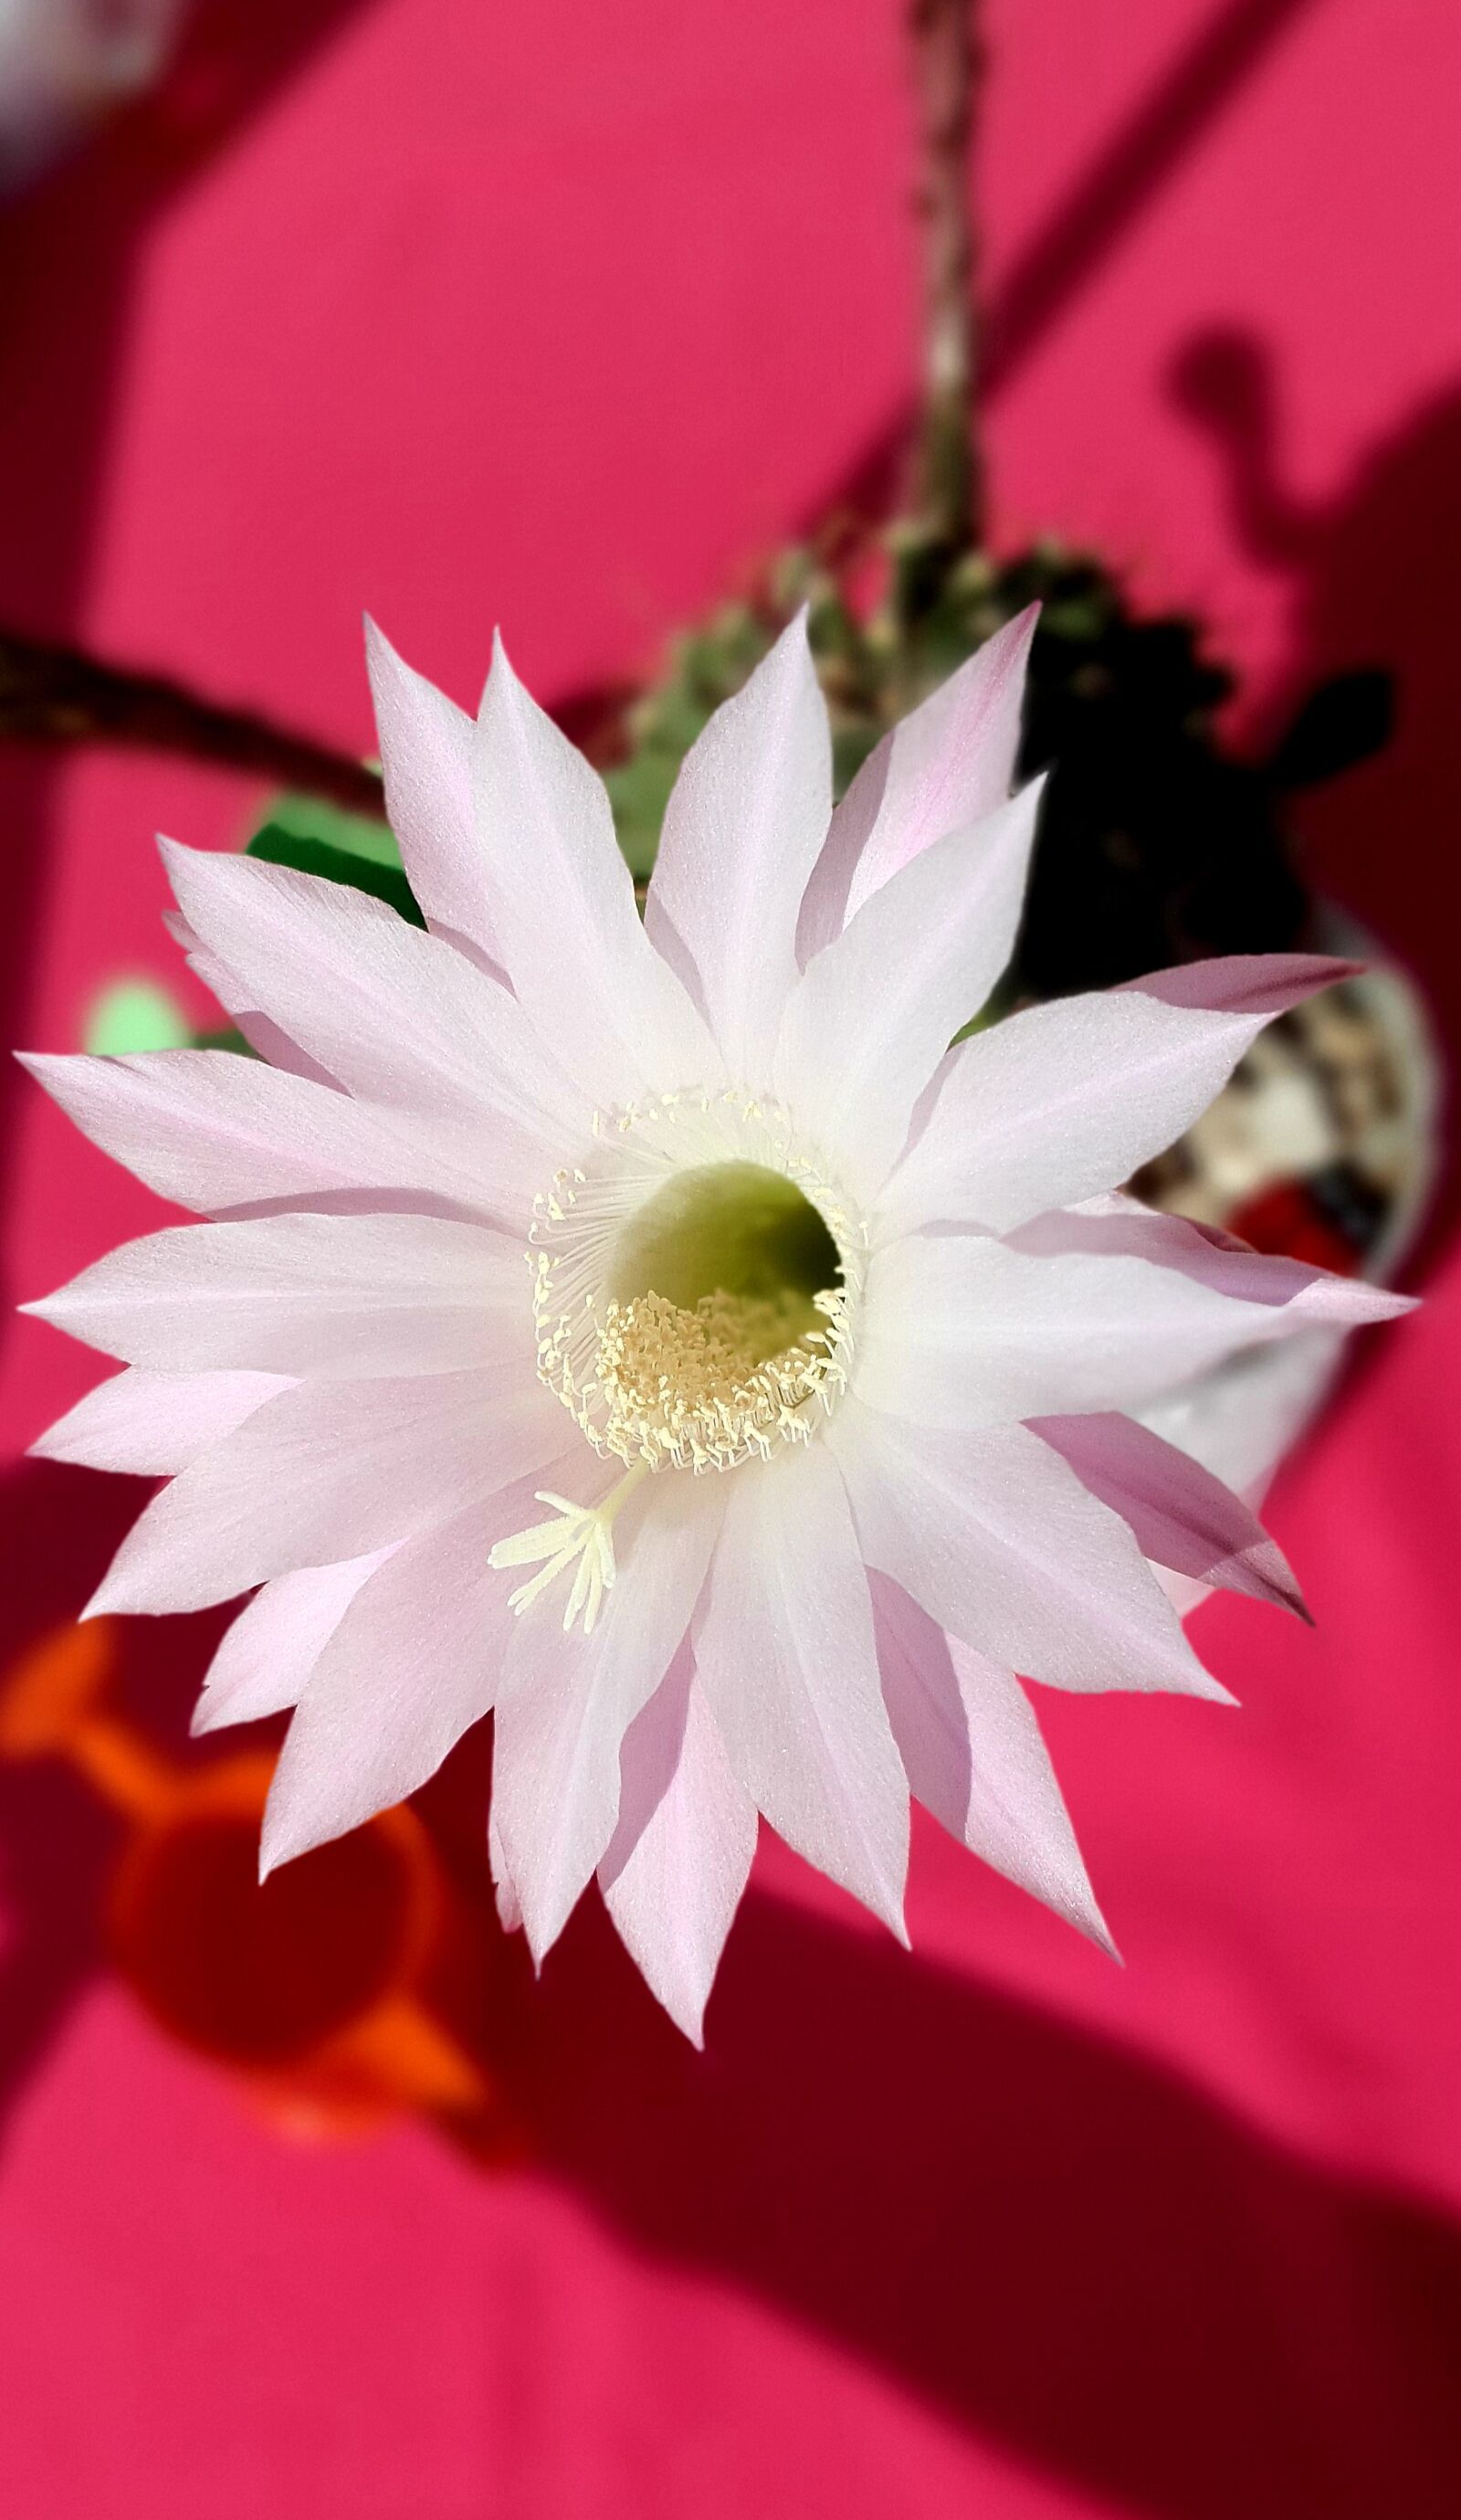 Samsung Galaxy S10e sample photo. Cactus, flower, pollen photography